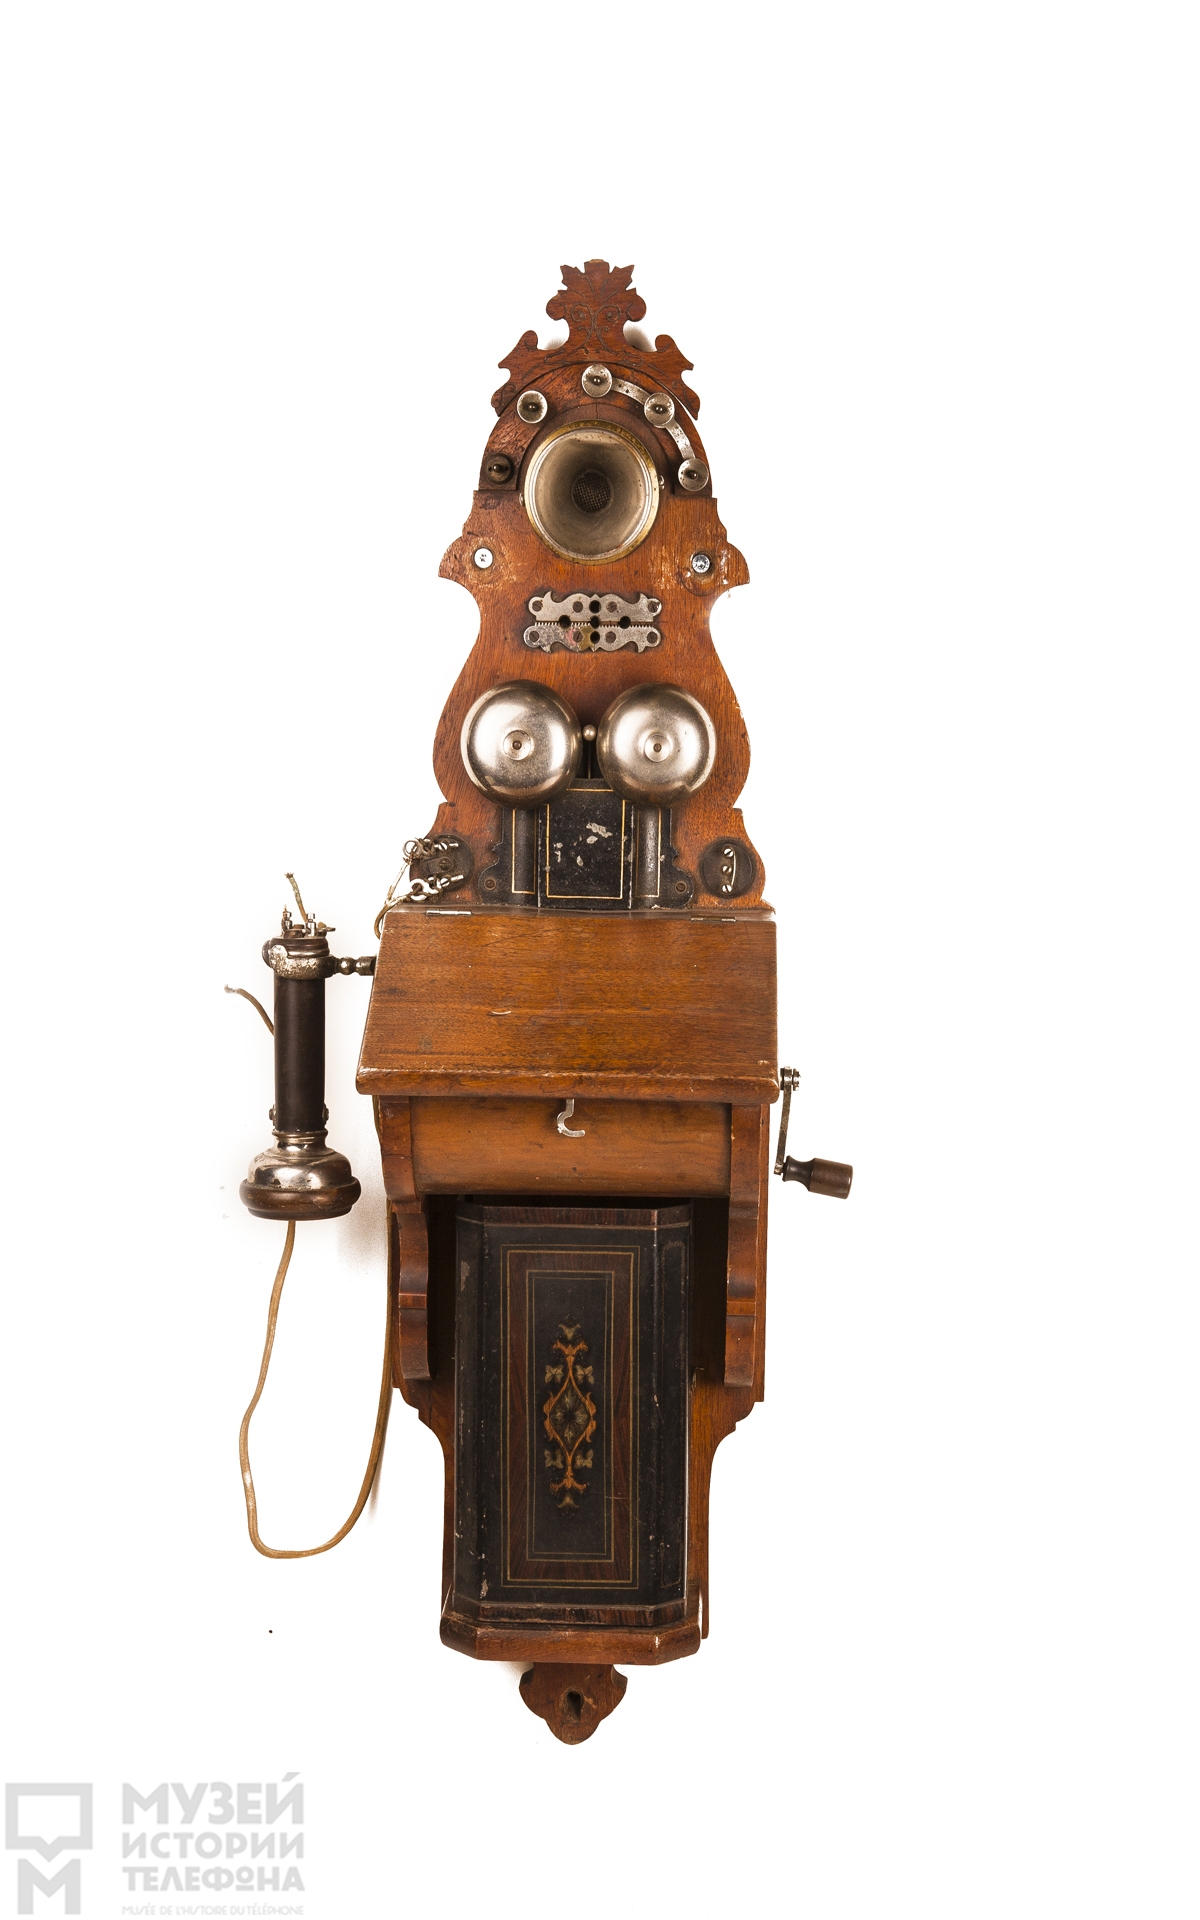 Телефонный аппарат системы МБ с наушником в виде трубки Белла, индукторным звонком, полочкой для письма и угольным микрофоном, модель AB 210